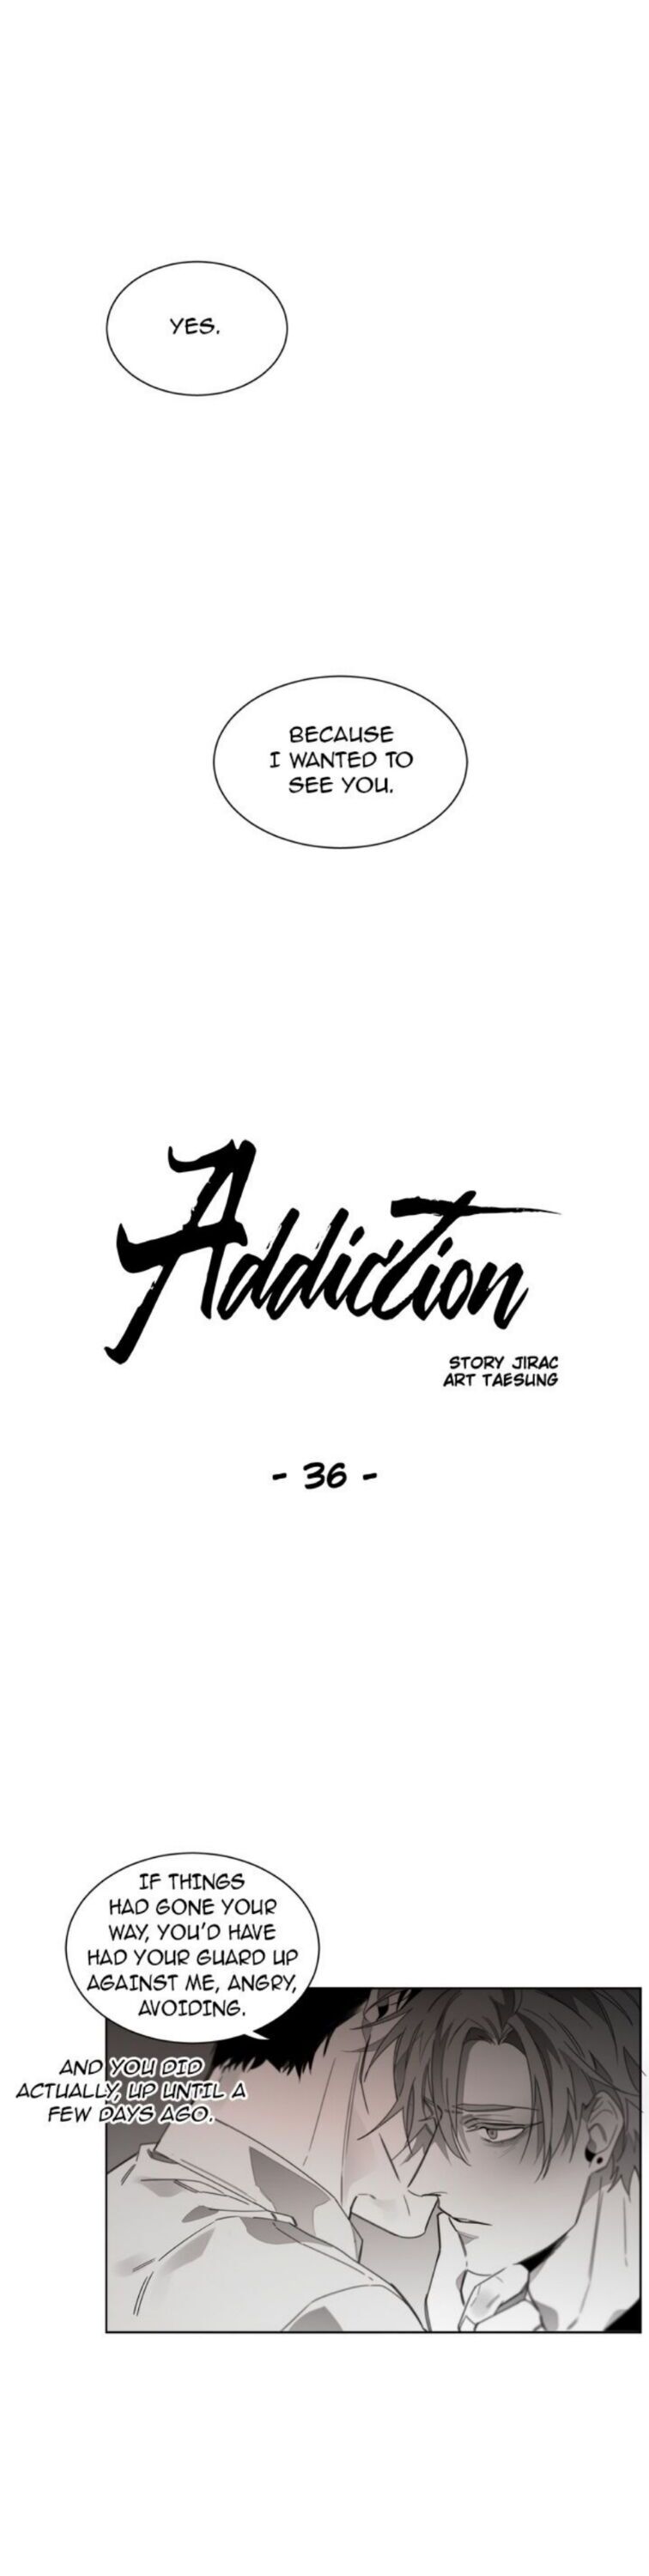 Addiction - Page 2